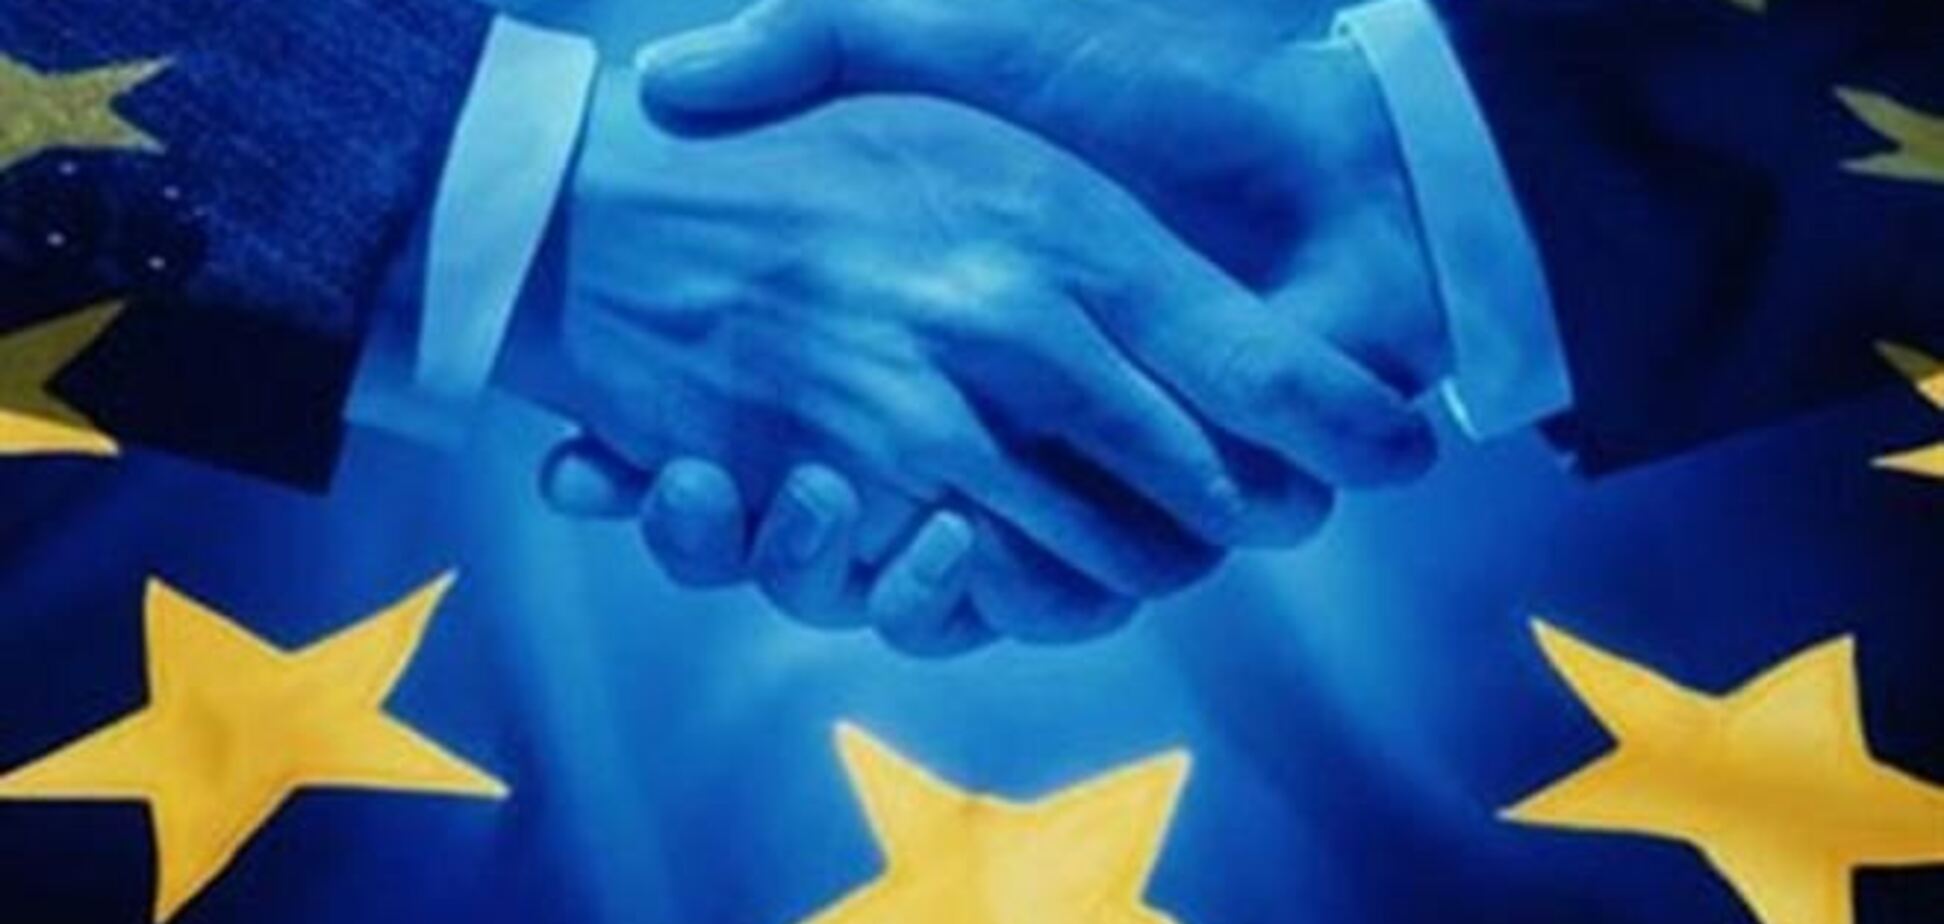 Європа вітає початок врегулювання кризи в Україні